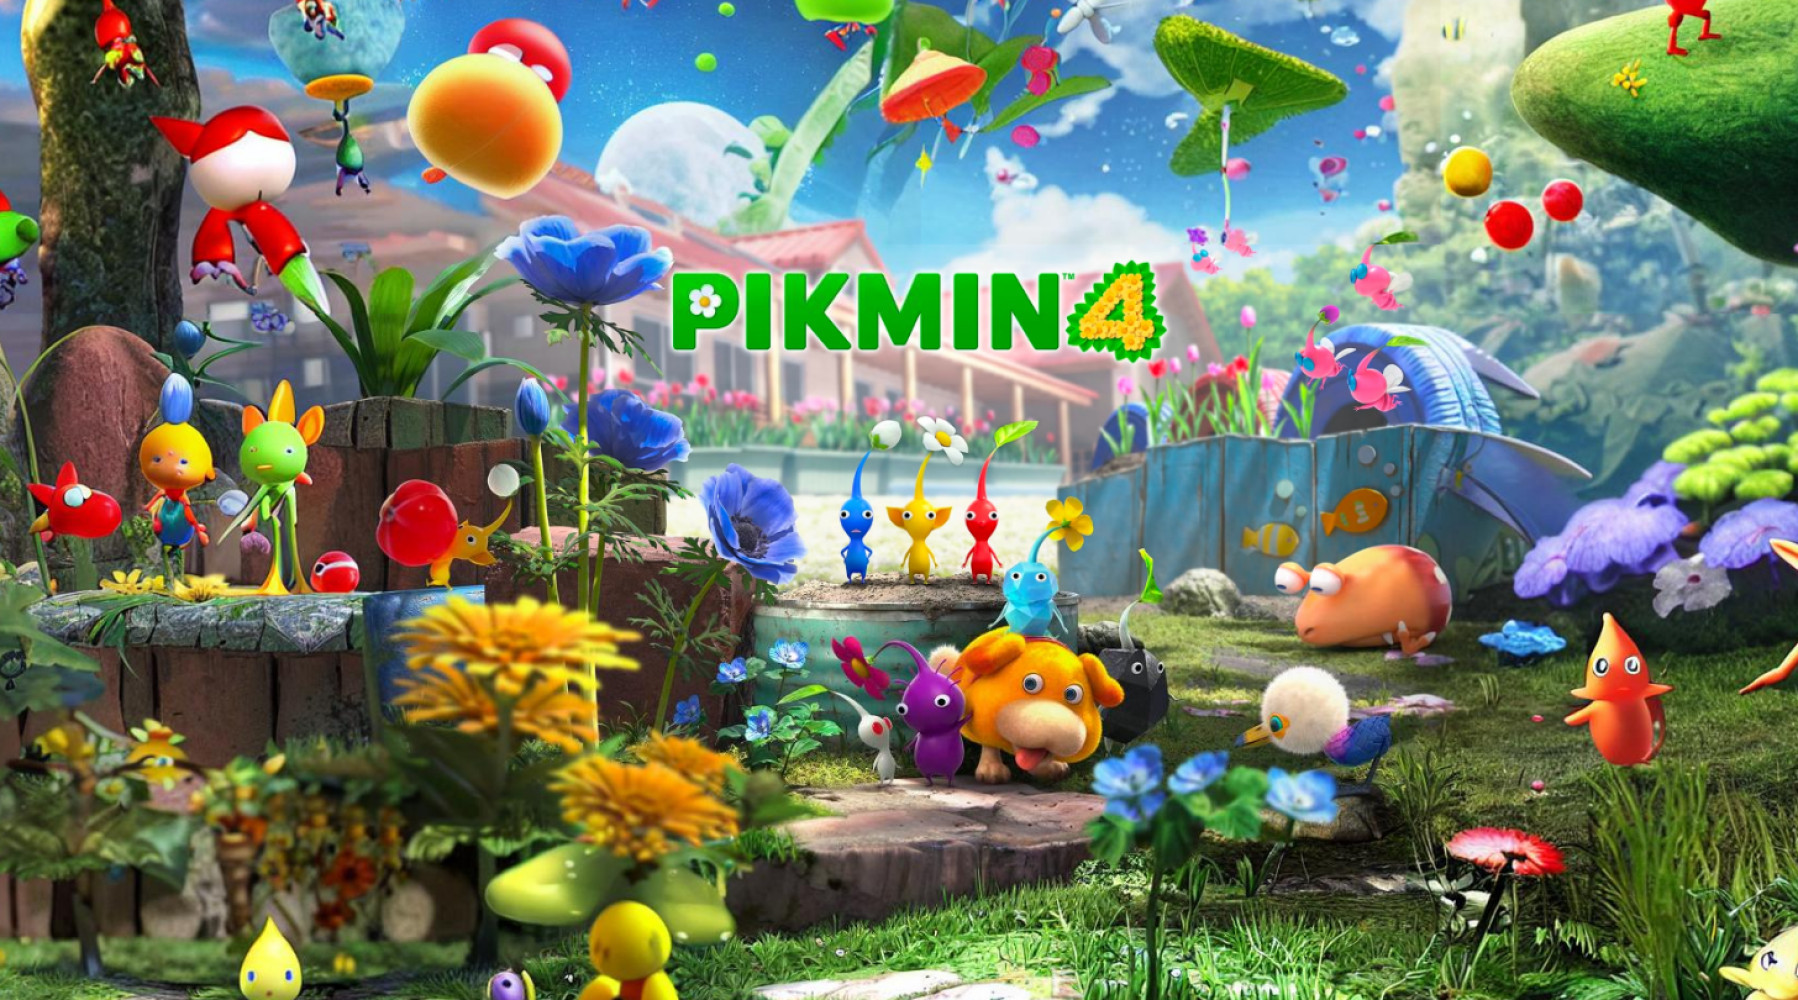 En ny trailer för Pikmin 4 har släppts, där vi får höra om egenskaperna hos olika typer av pikminer